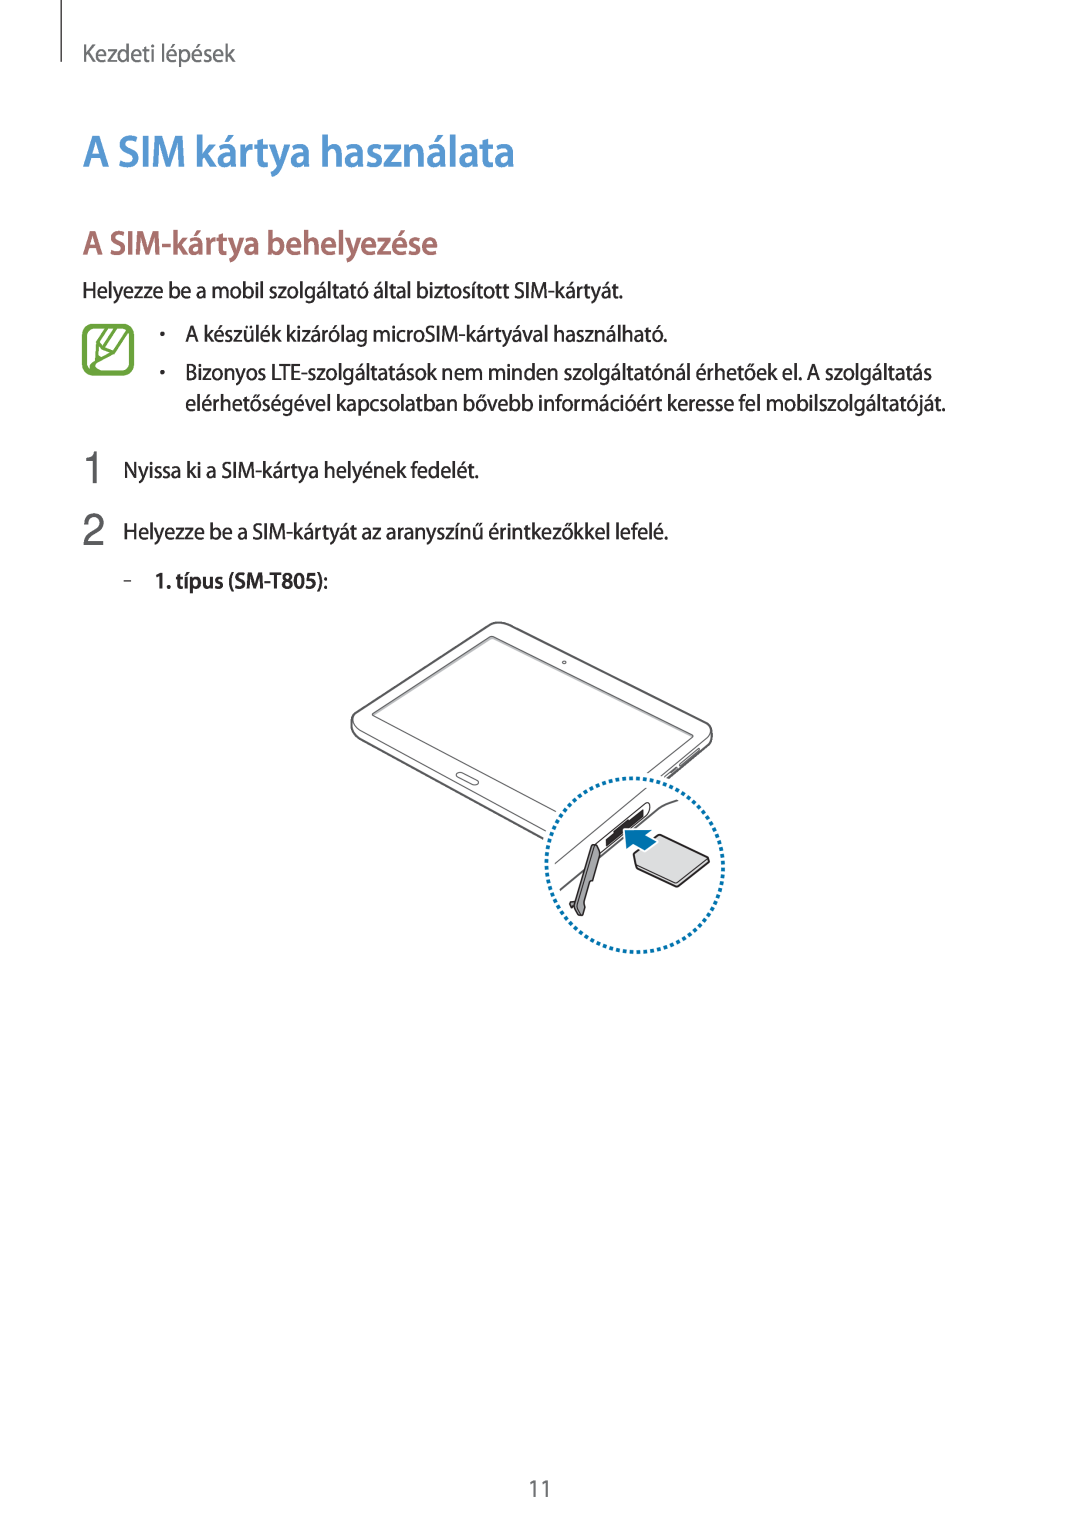 Samsung SM-T705NZWAXEH manual A SIM kártya használata, A SIM-kártya behelyezése, Kezdeti lépések, 1. típus SM-T805 